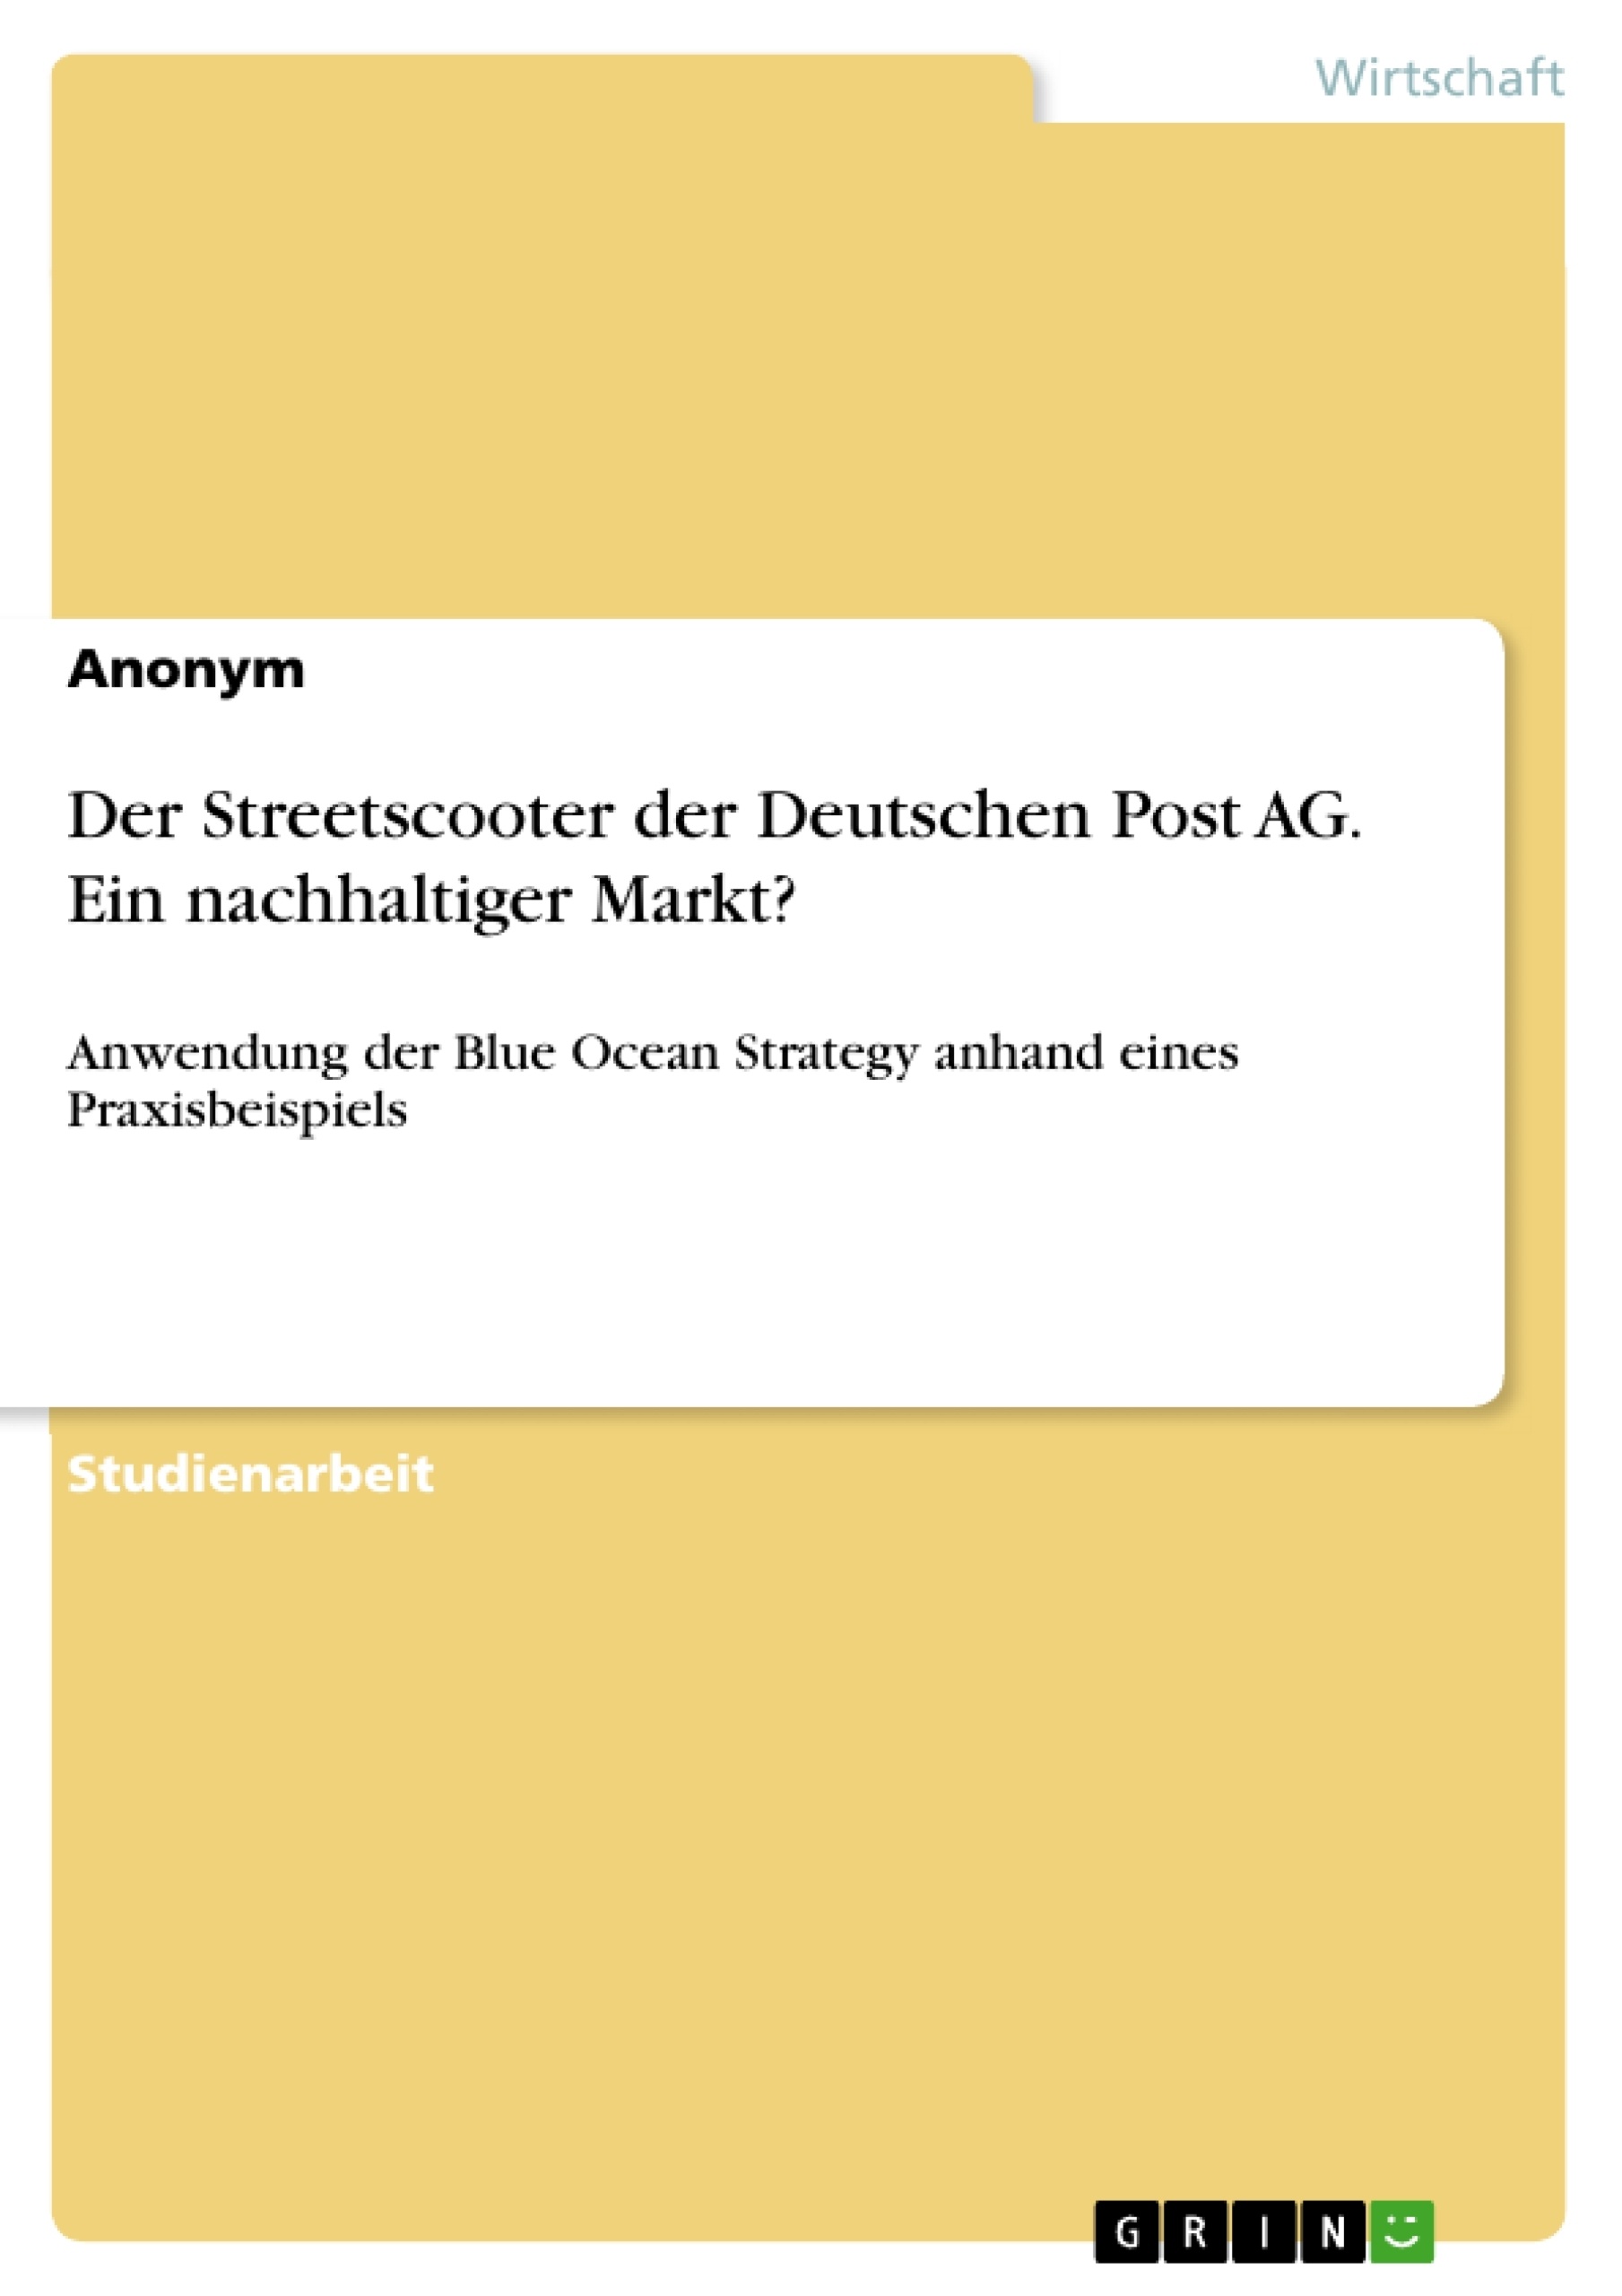 Title: Der Streetscooter der Deutschen Post AG. Ein nachhaltiger Markt?